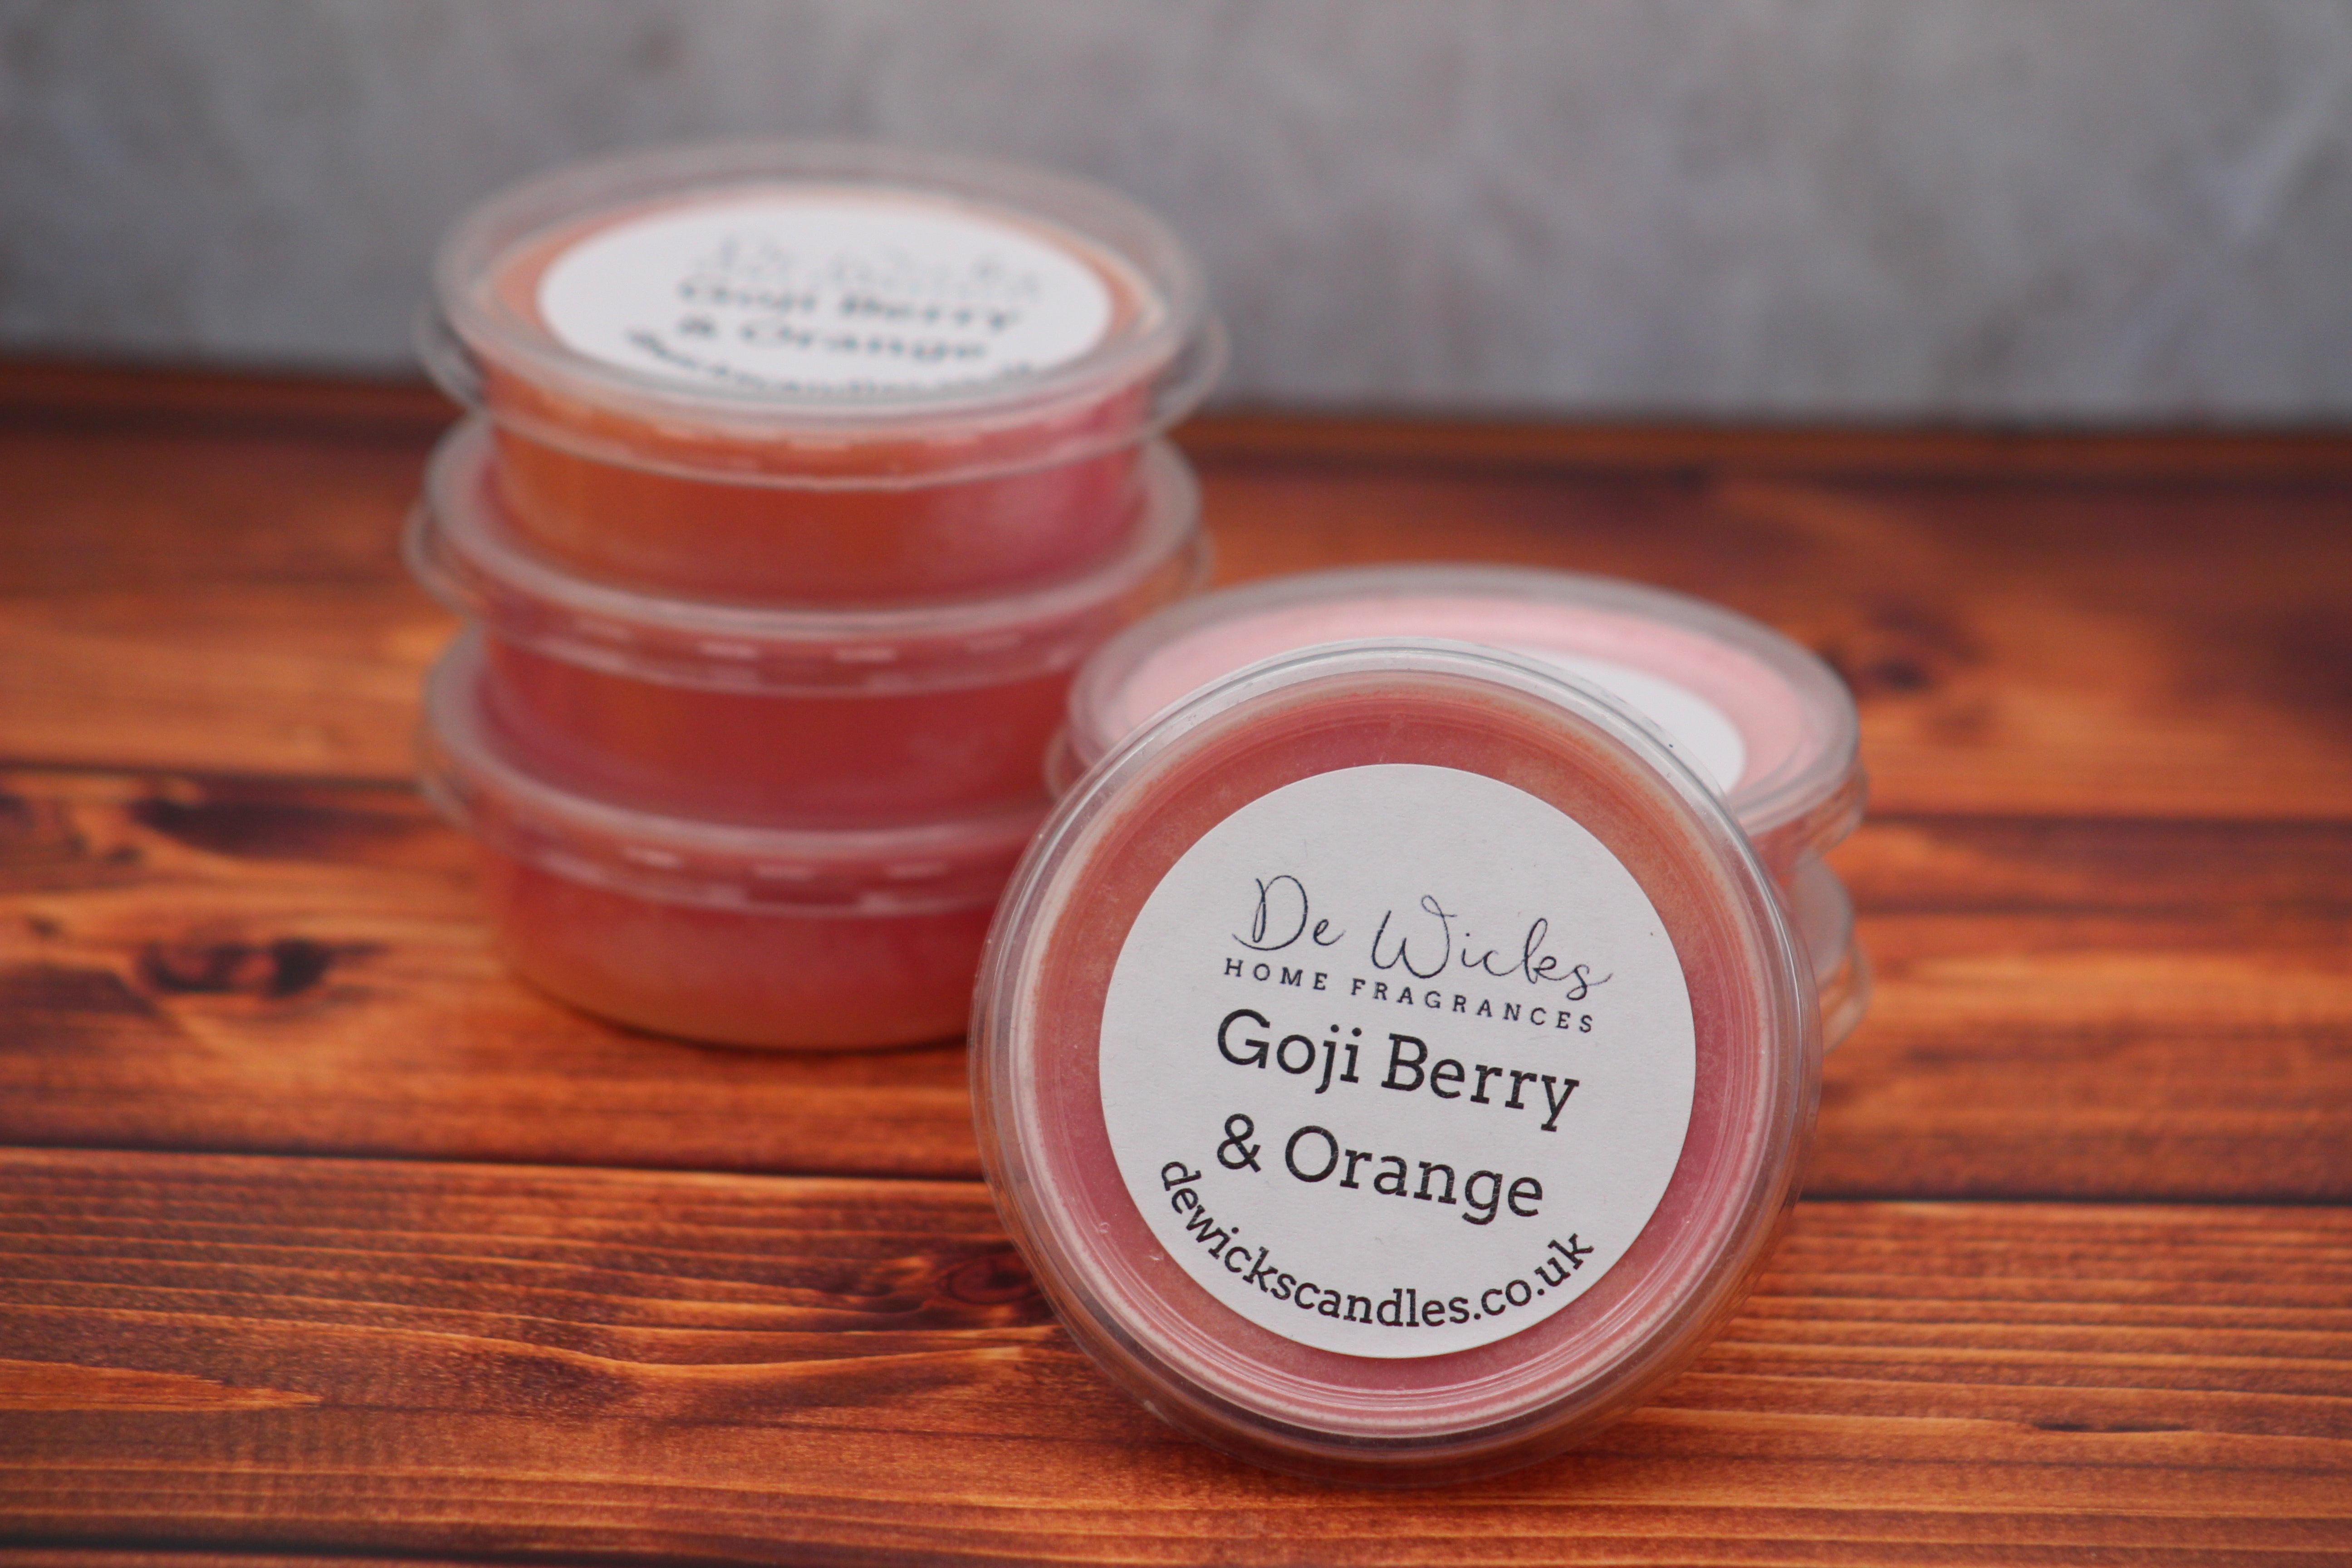 Goji Berry & Orange - De Wicks Home Fragrances